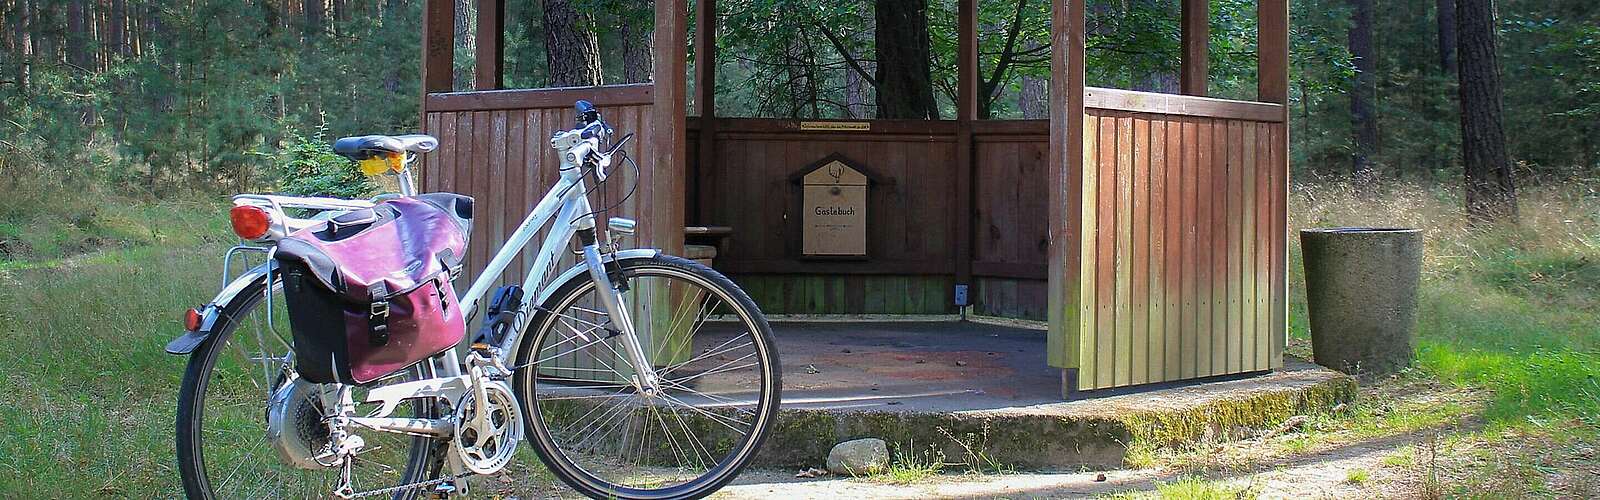 Fahrrad an Schutzhütte bei Tour zum Mittelpunkt,
        
    

        Foto: Naturpark Hoher Fläming/Heiko Bansen